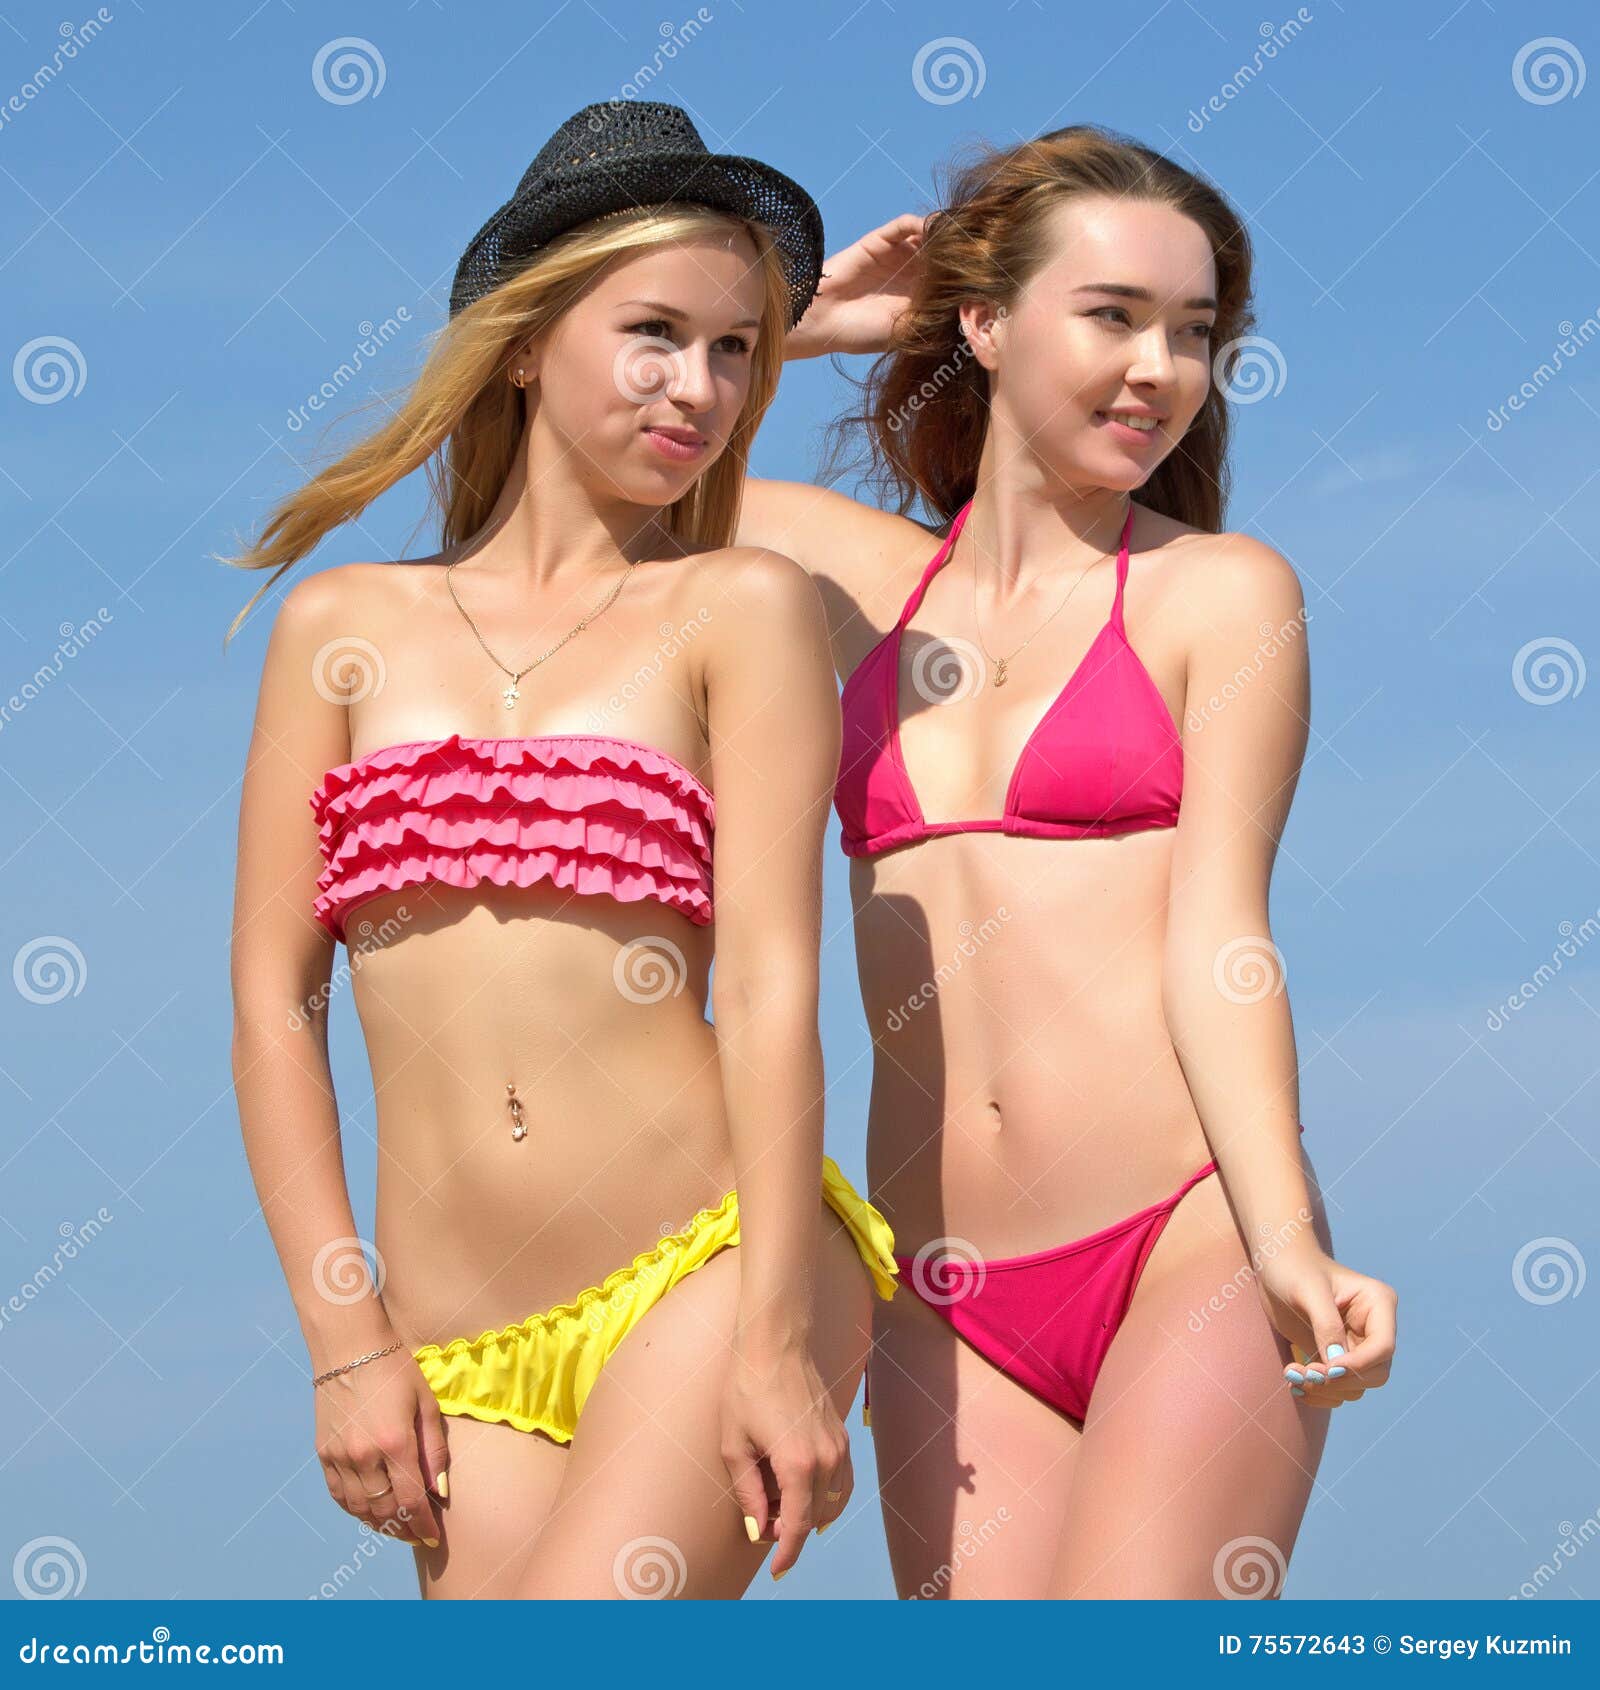 Girls bikinis pics